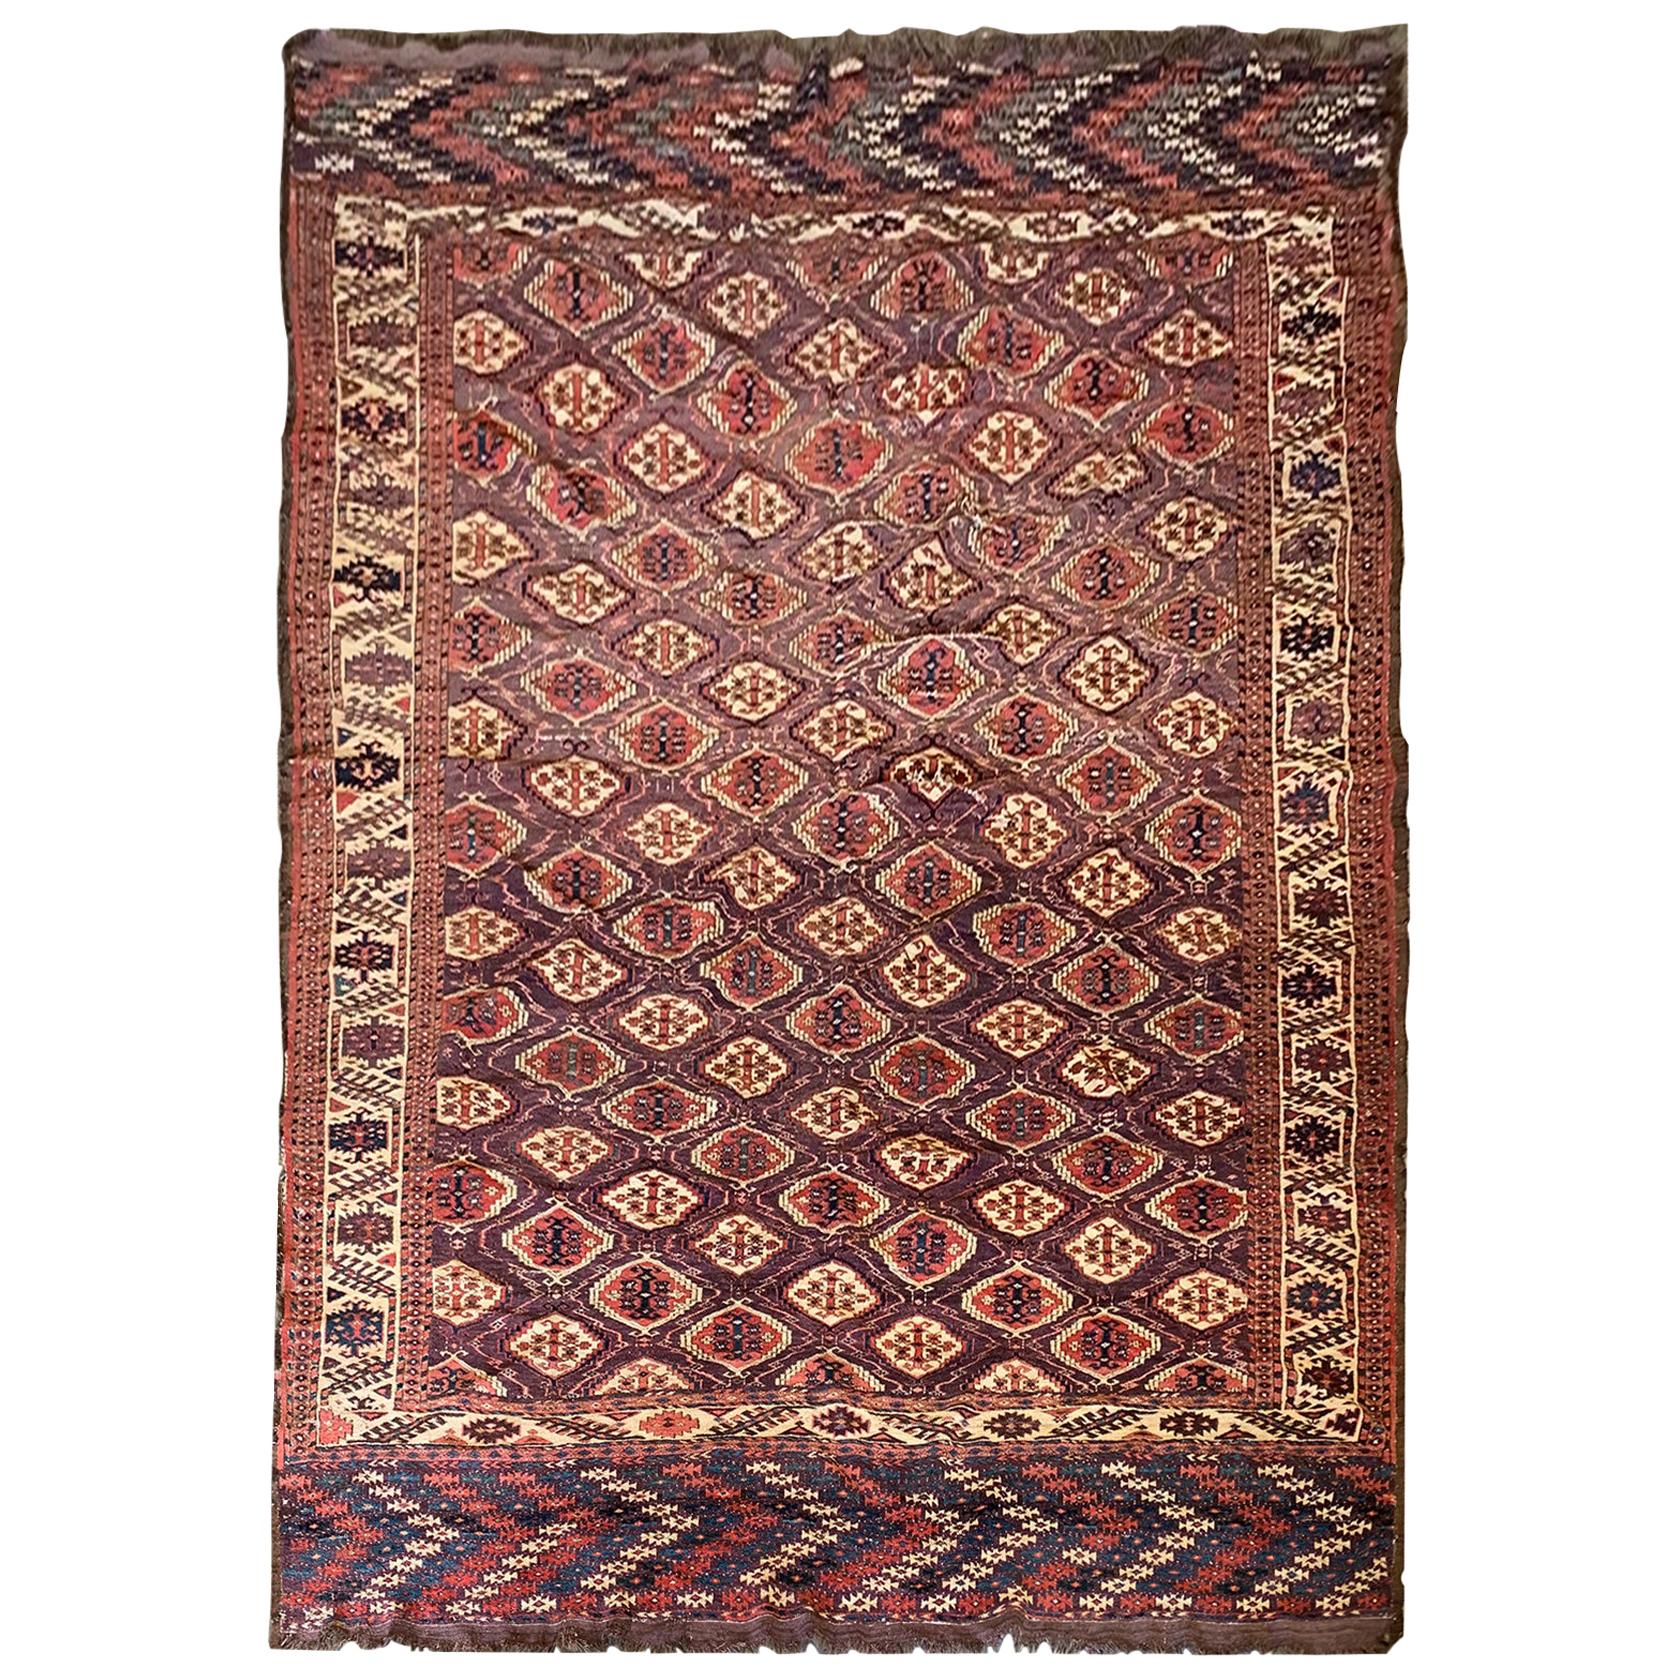 Handgefertigter orientalischer türkischer antiker Teppich aus brauner und cremefarbener Wolle